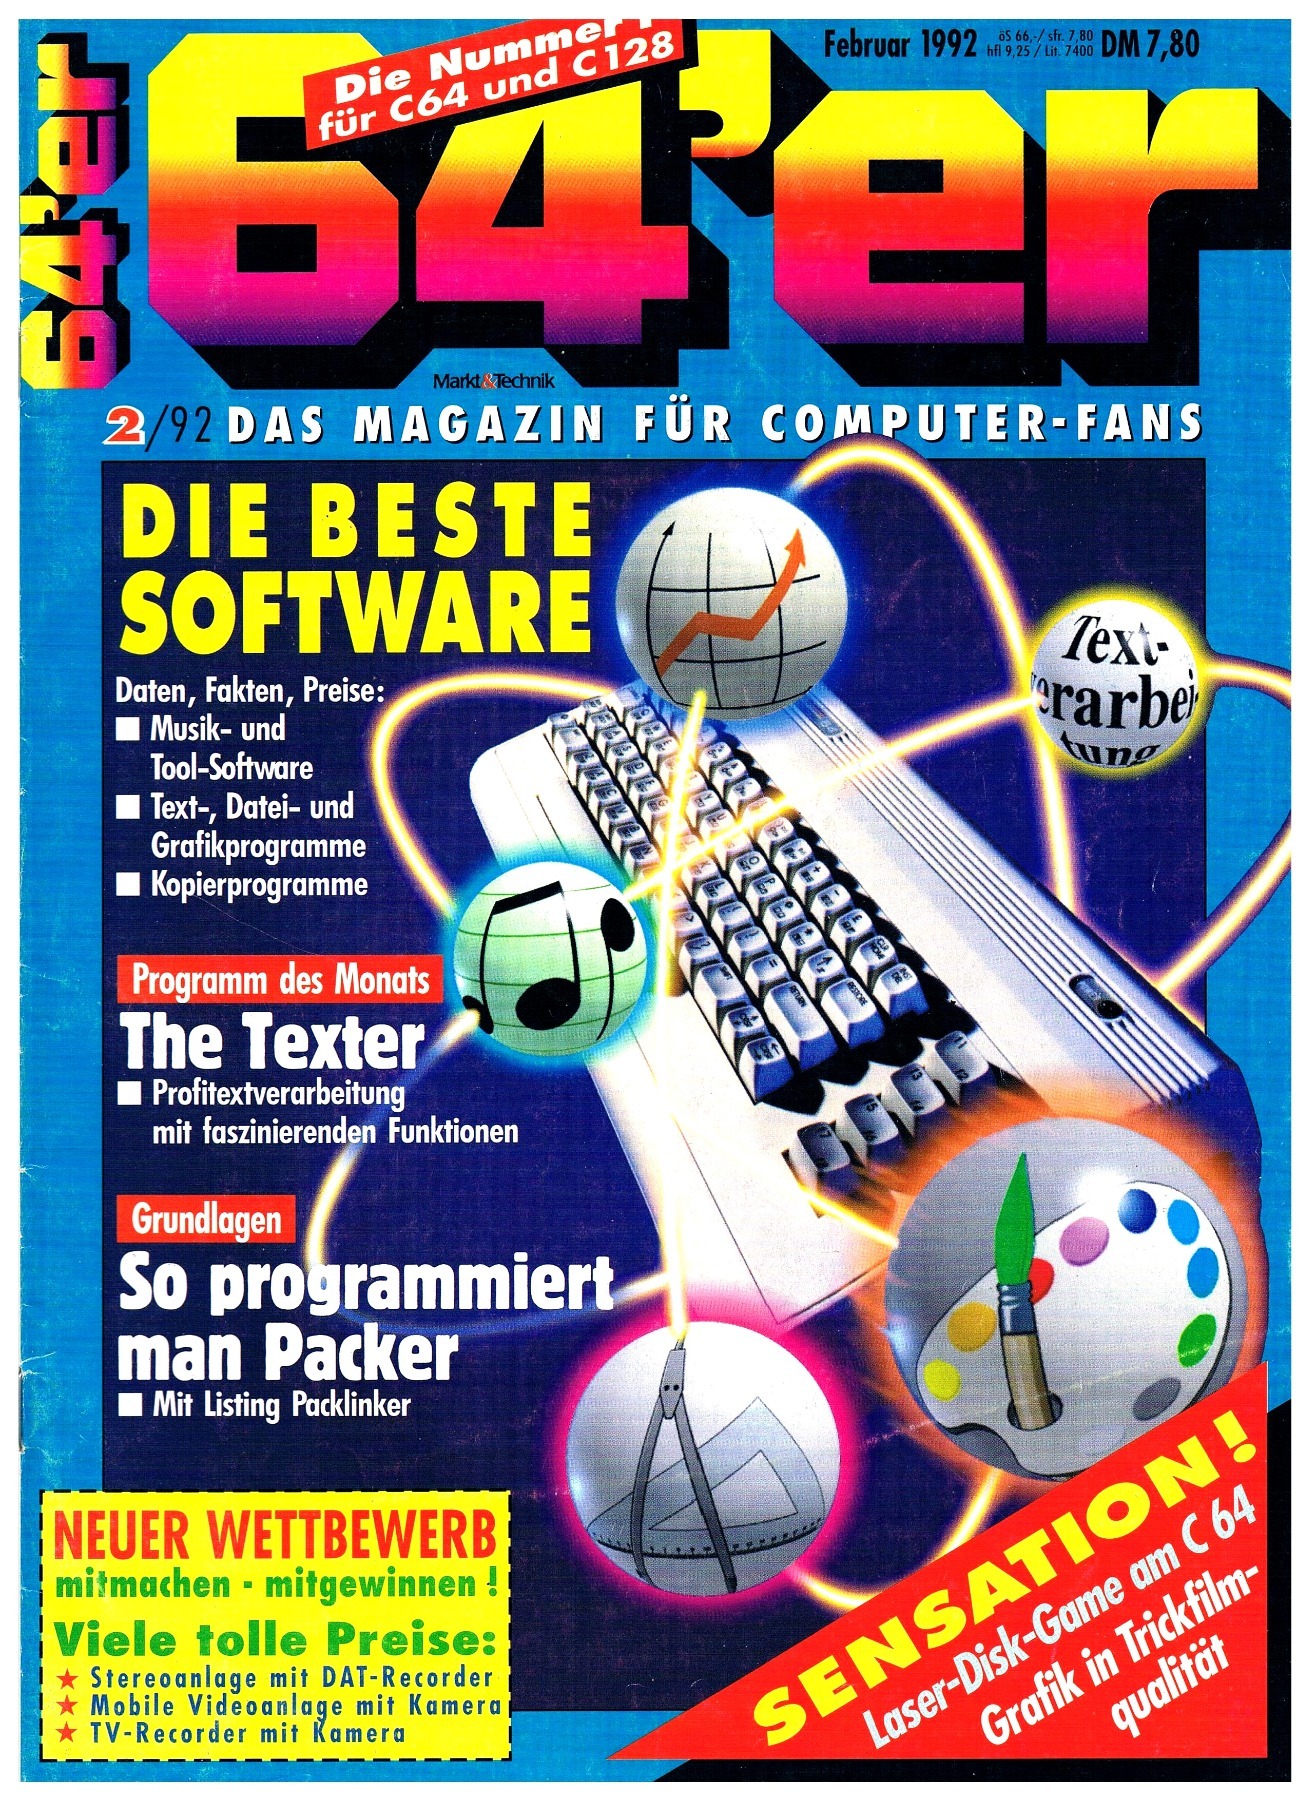 64er Magazin - Ausgabe 2/92 1992